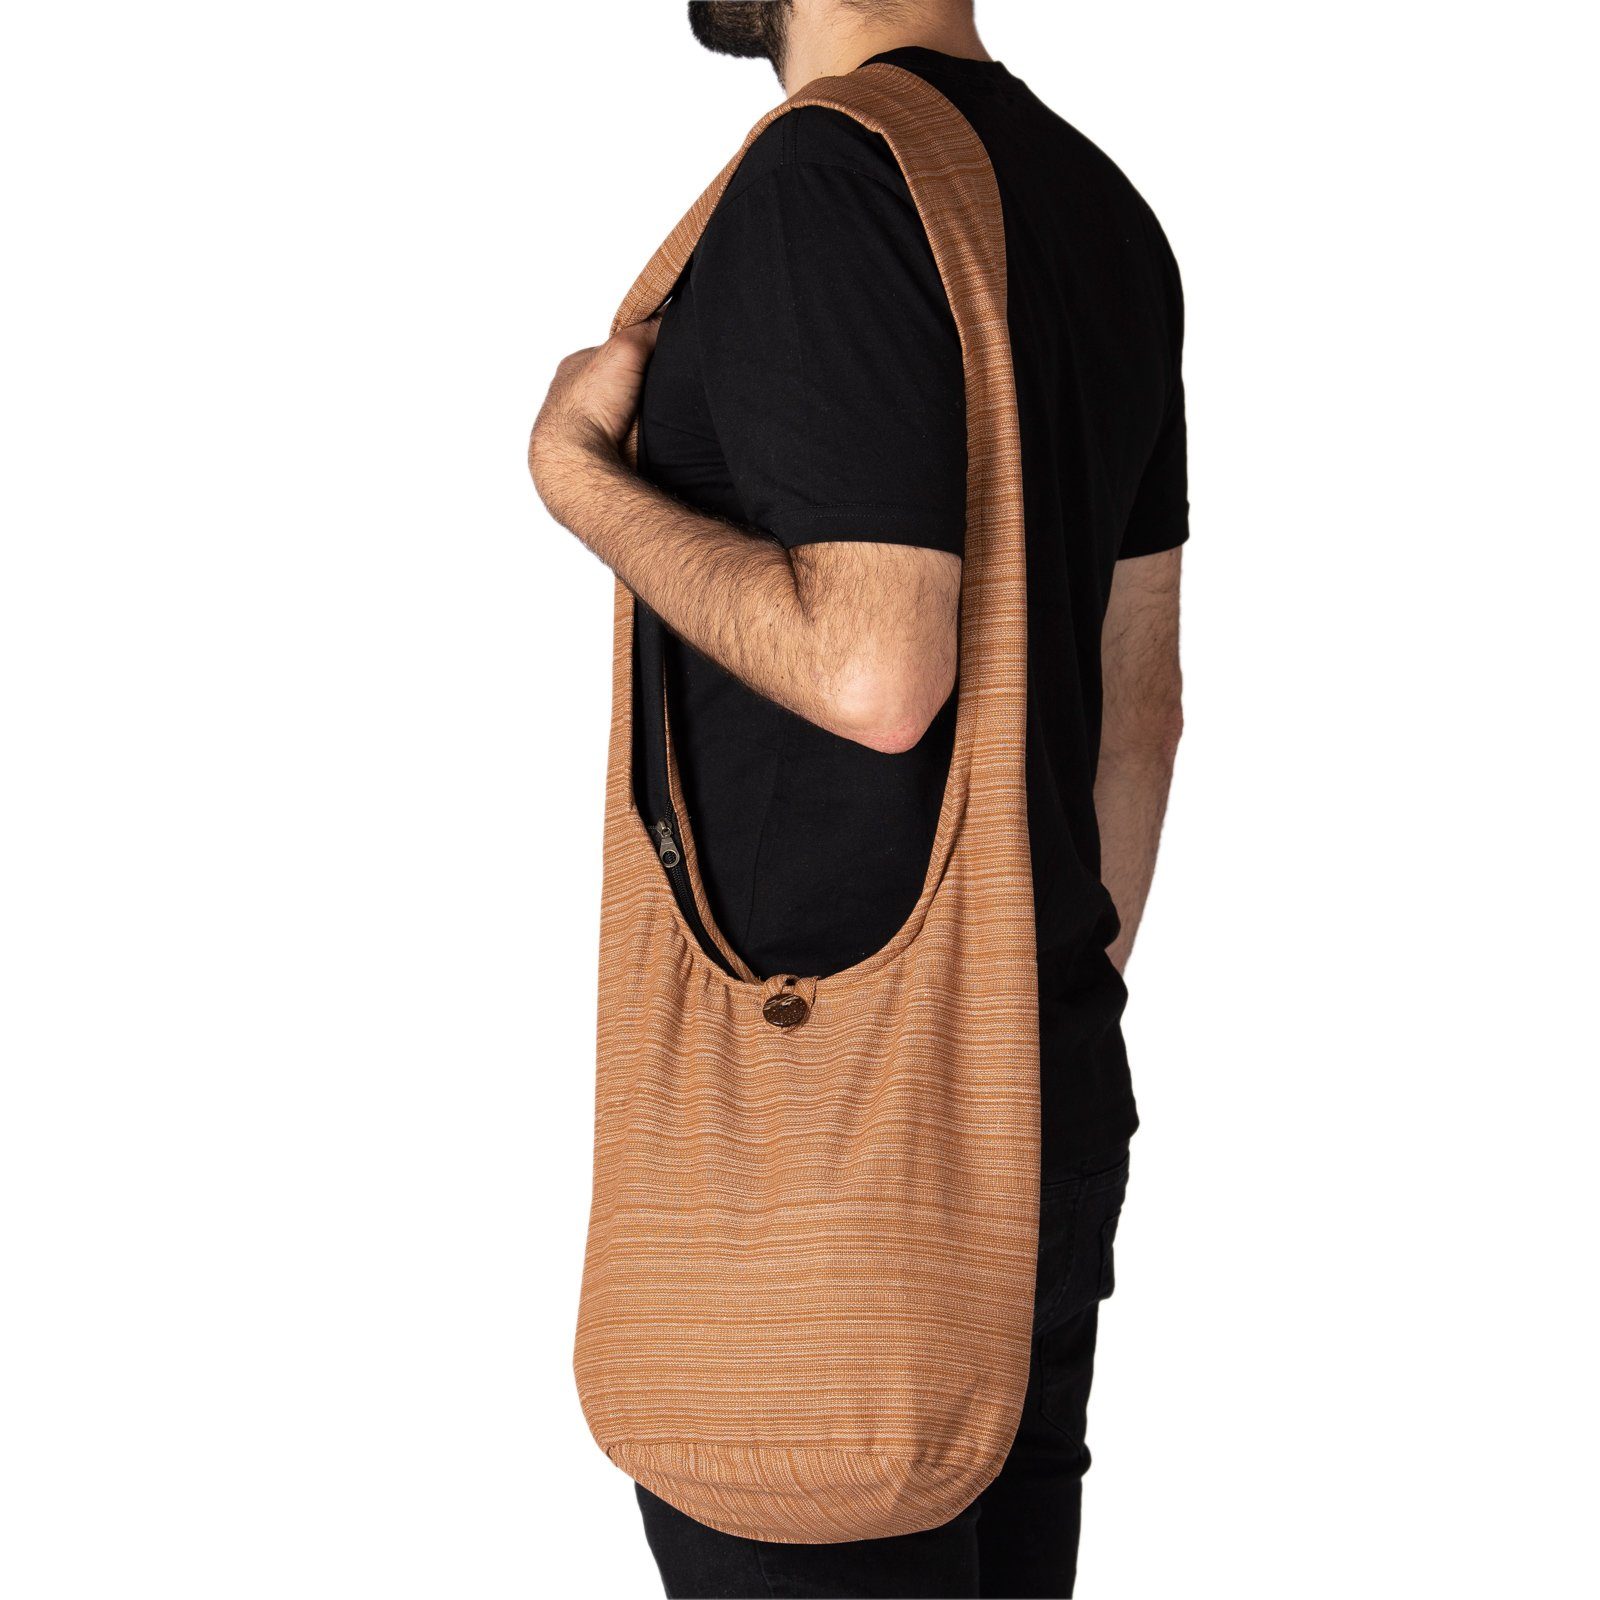 Handtasche In Schultertasche, Schulterbeutel oder Beuteltasche Yogatasche Lini als 100% Größen hellbraun auch aus nutzbar 2 Strandtasche Wickeltasche Baumwolle PANASIAM